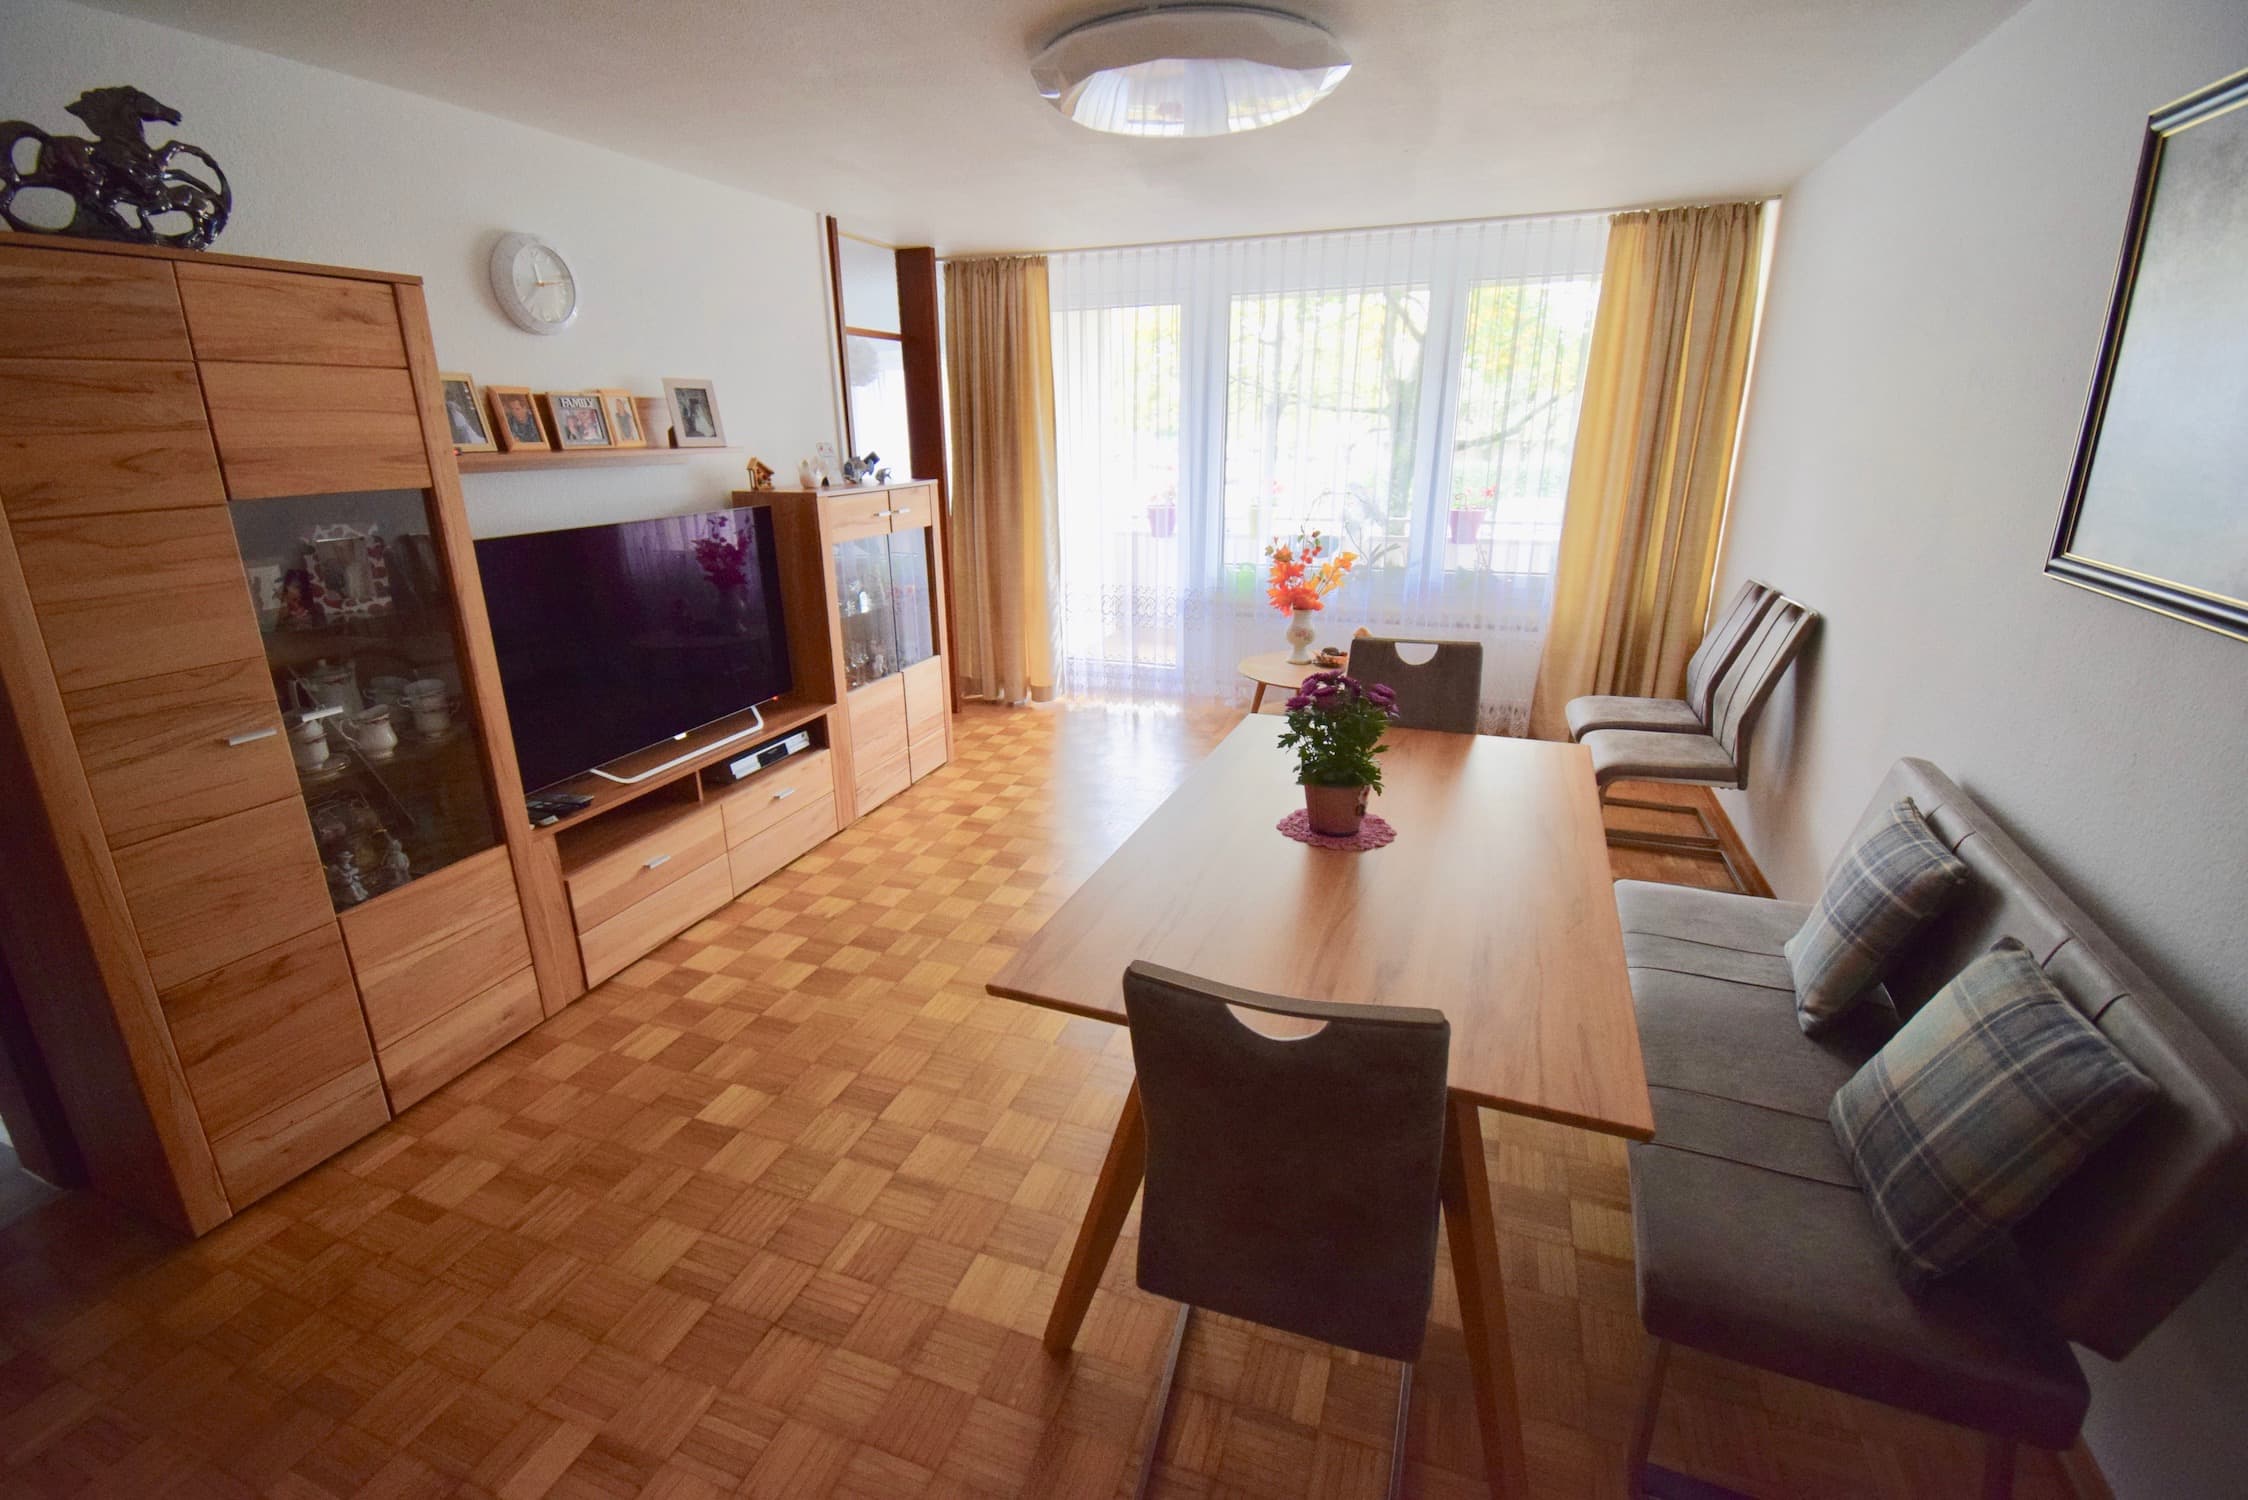 Vermietet: Gepflegte 3,5-Zimmer-Wohnung mit Balkon und Garage in beliebtem Wohngebiet von Schwäbisch Hall